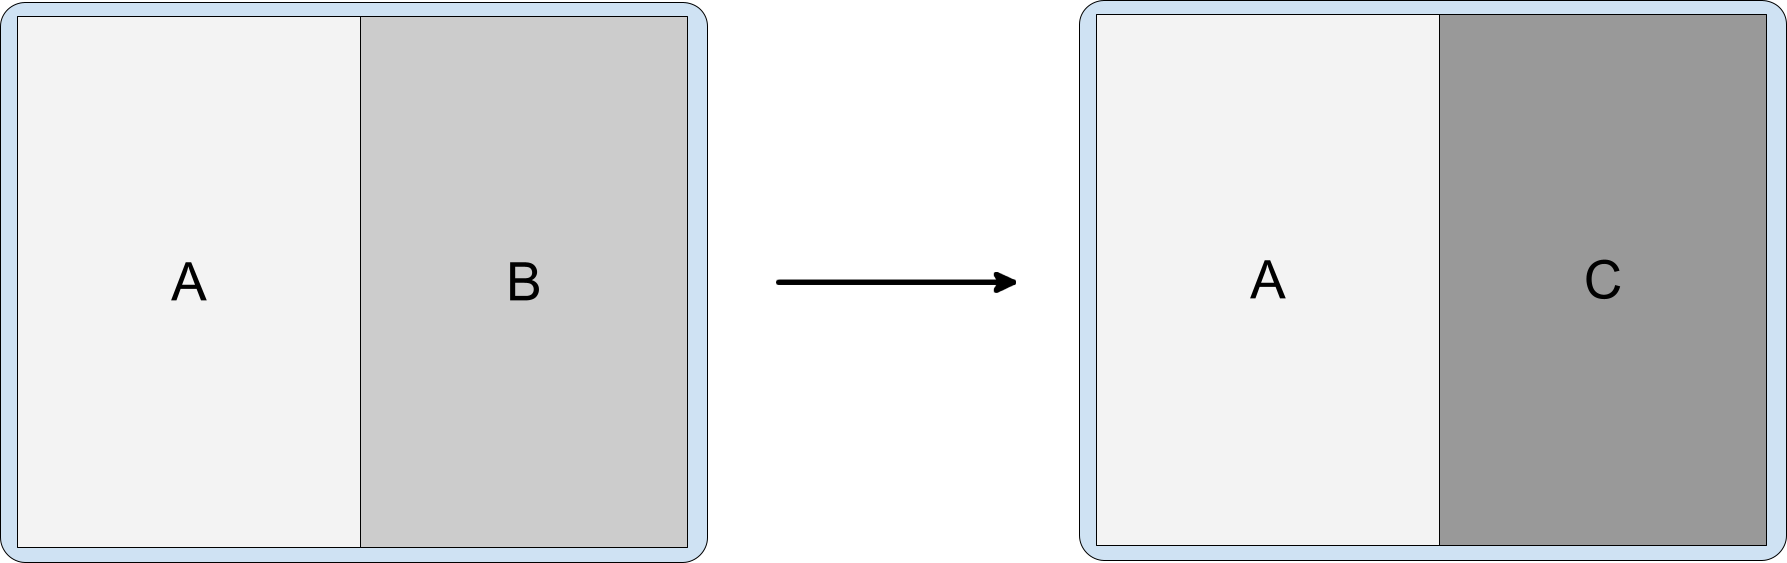 Pemisahan aktivitas yang berisi aktivitas A, B, dan C dengan C yang bertumpuk di
          atas B.